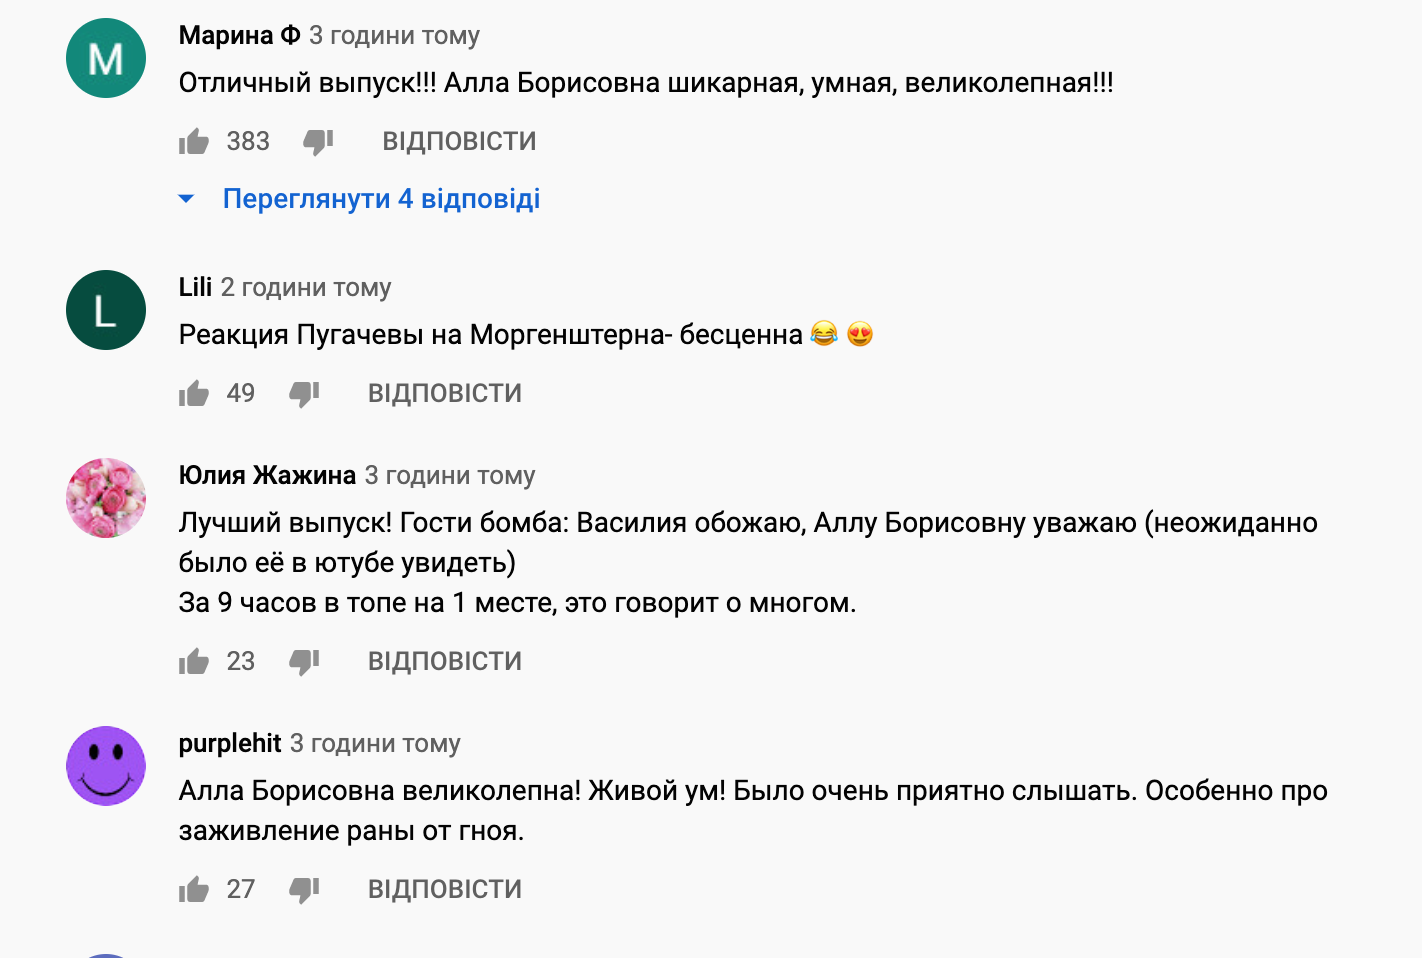 Пугачева вызвала восторг в YouTube.